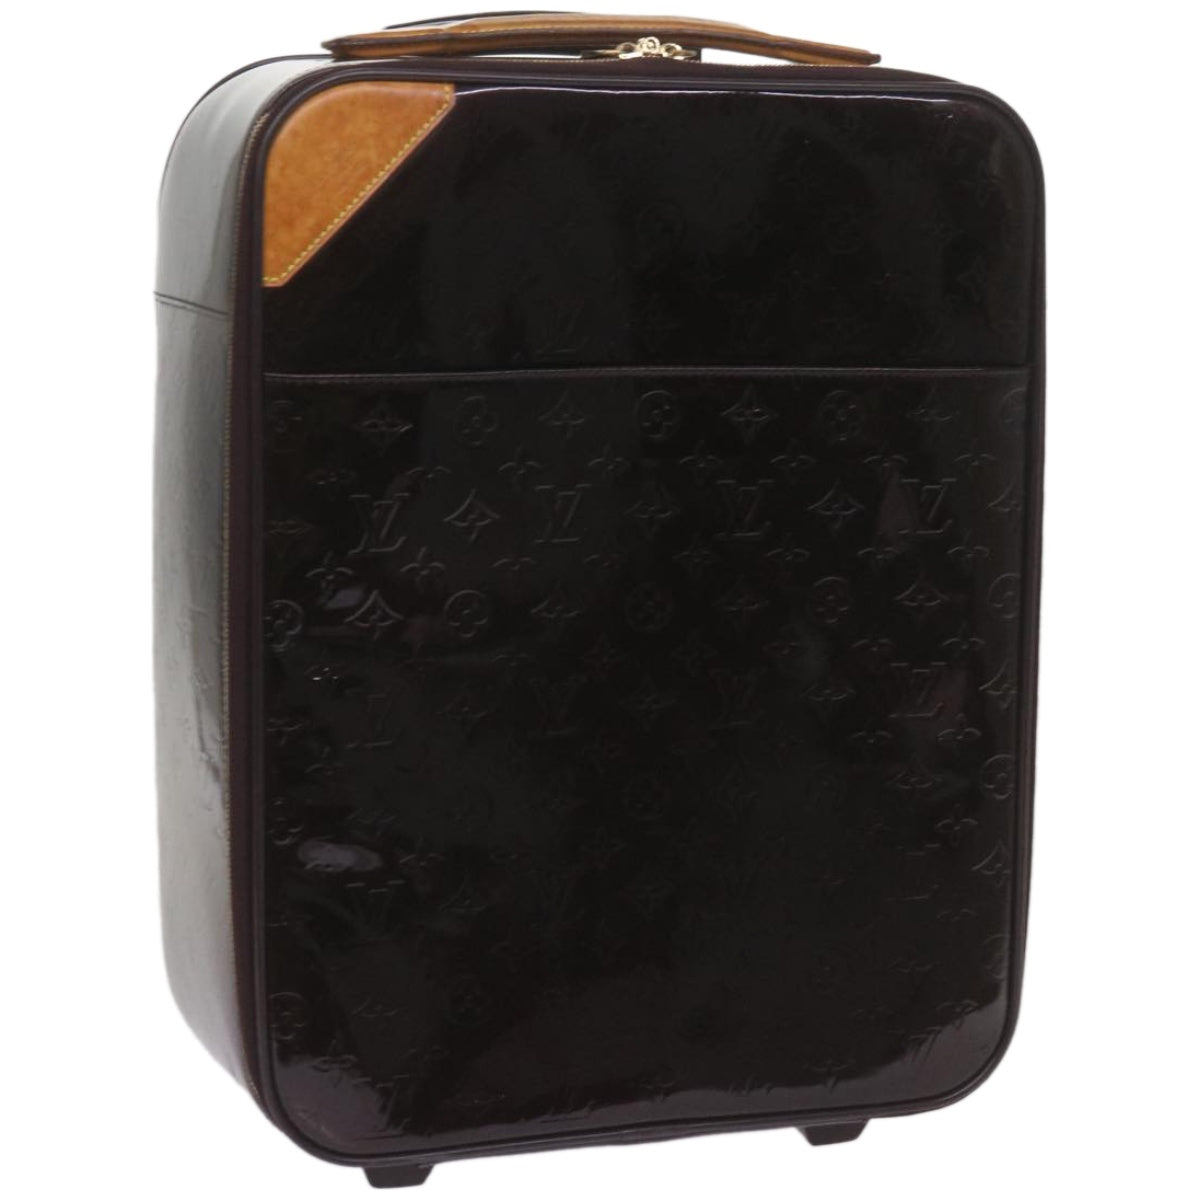 LOUIS VUITTON Monogram Vernis Pegas 45 Suitcase Amarante M91277 LV Auth 66966